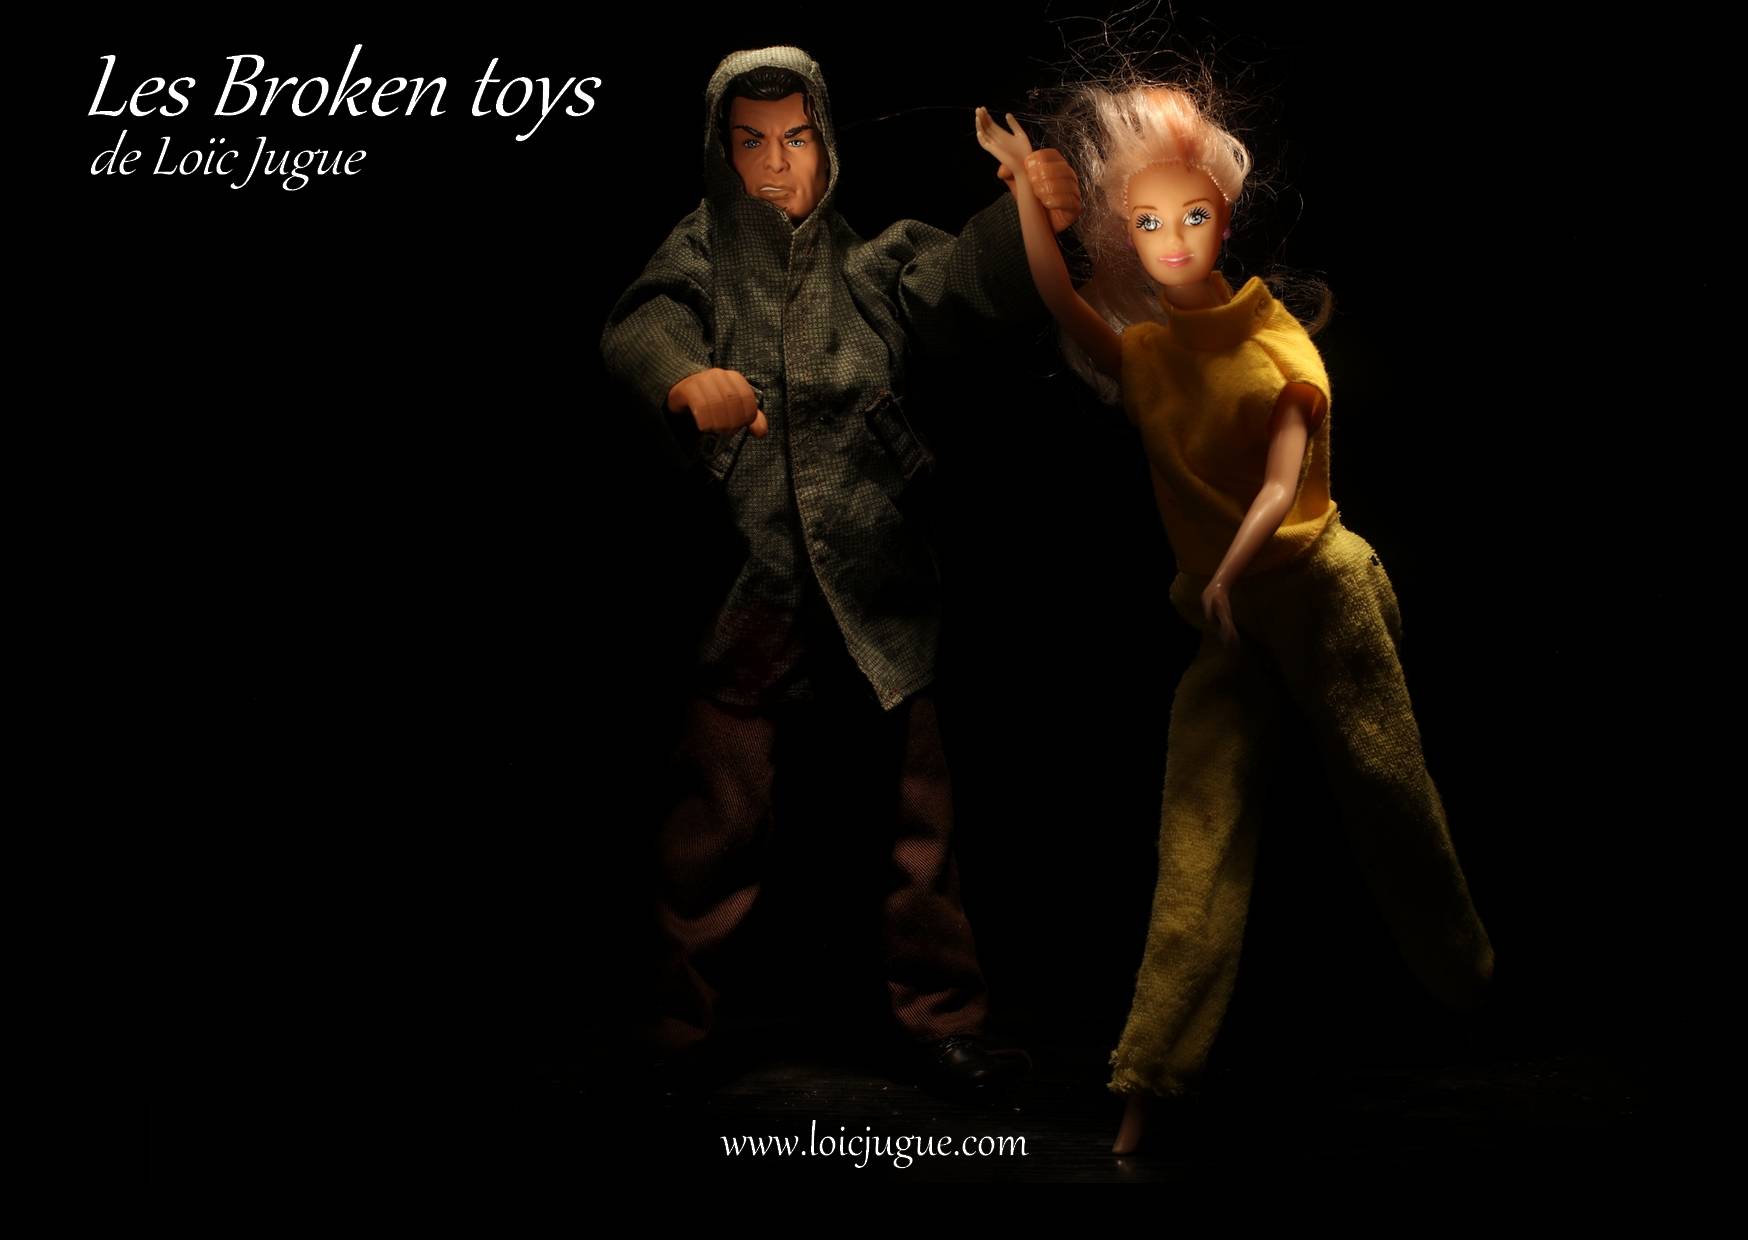 Les broken toys de Loïc Jugue:  Avis de tempête